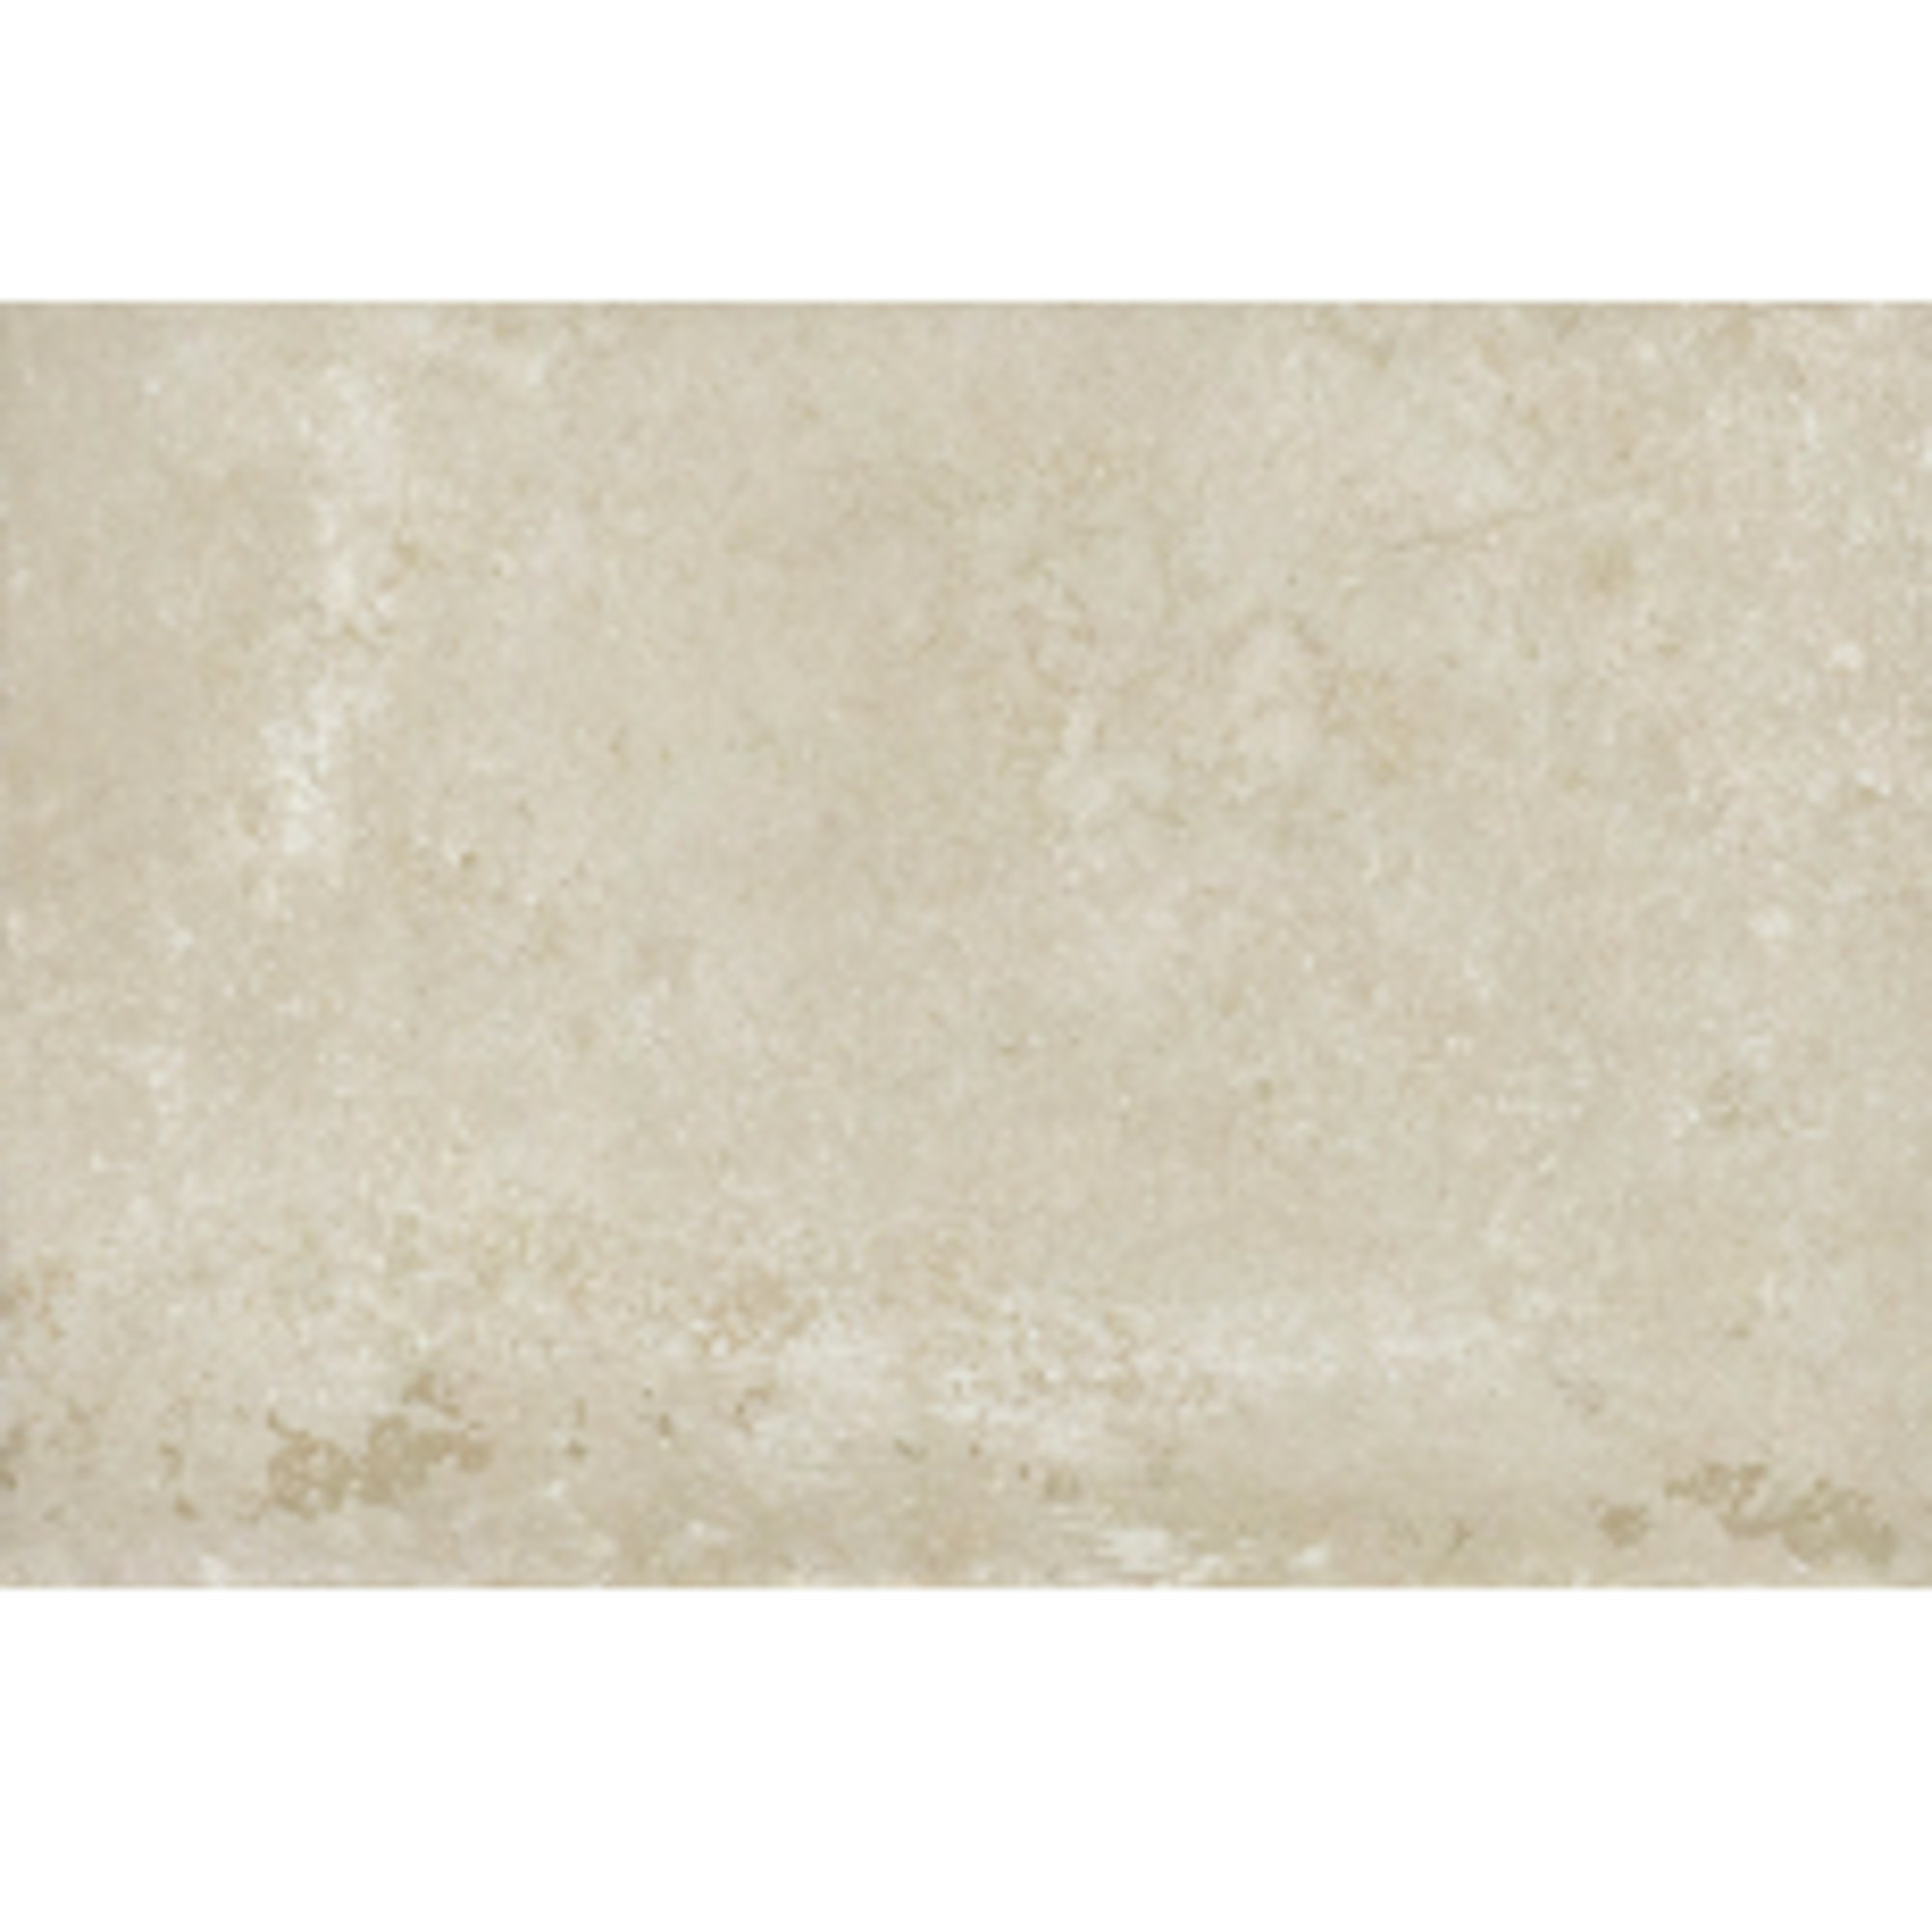 Prestbury Blanc Stone Effect Tile